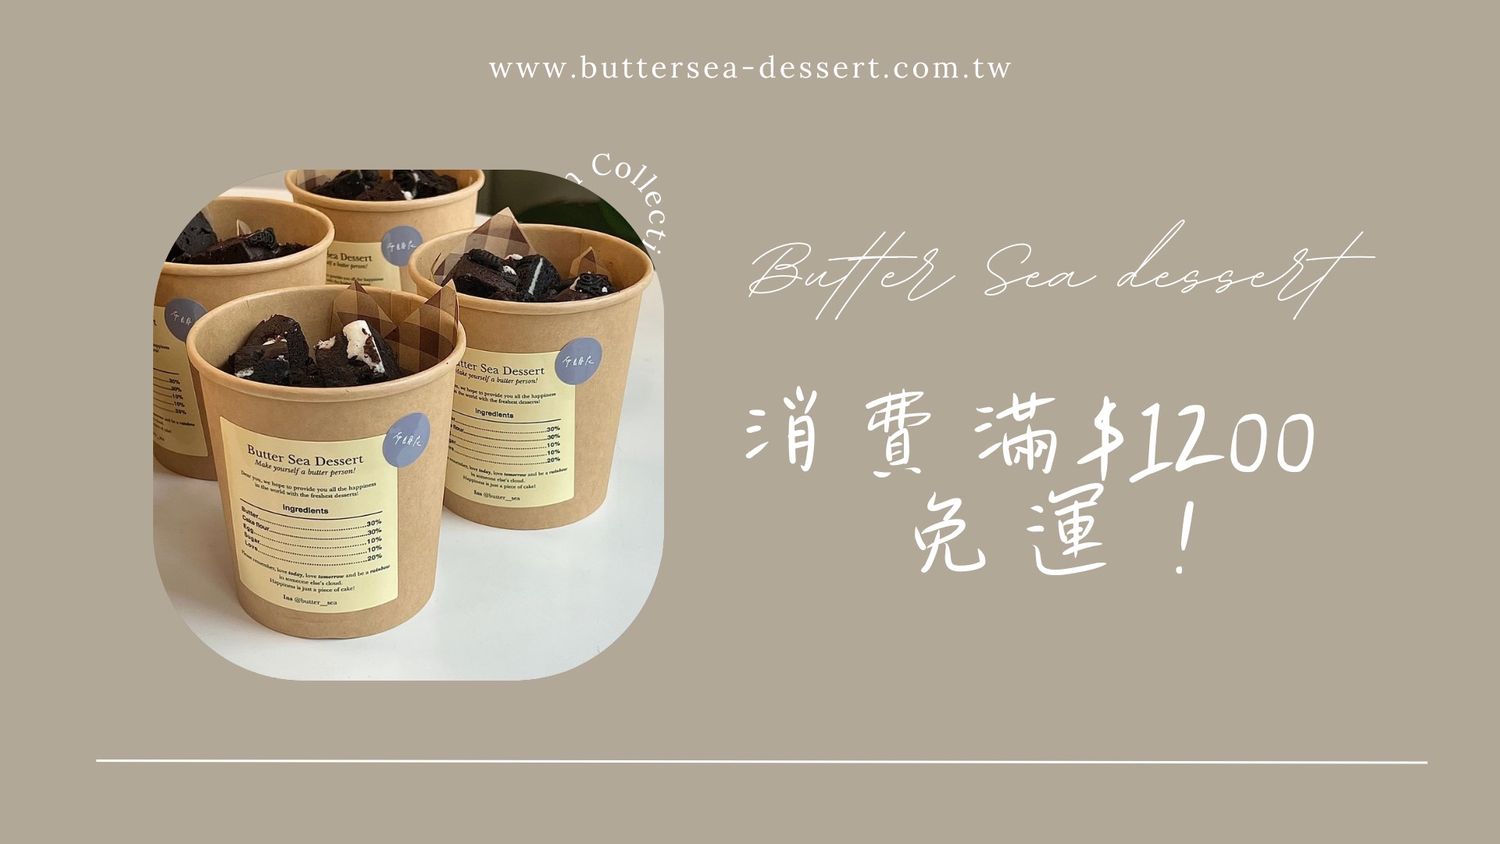 Butter Sea Dessert 海邊的奶油 - 